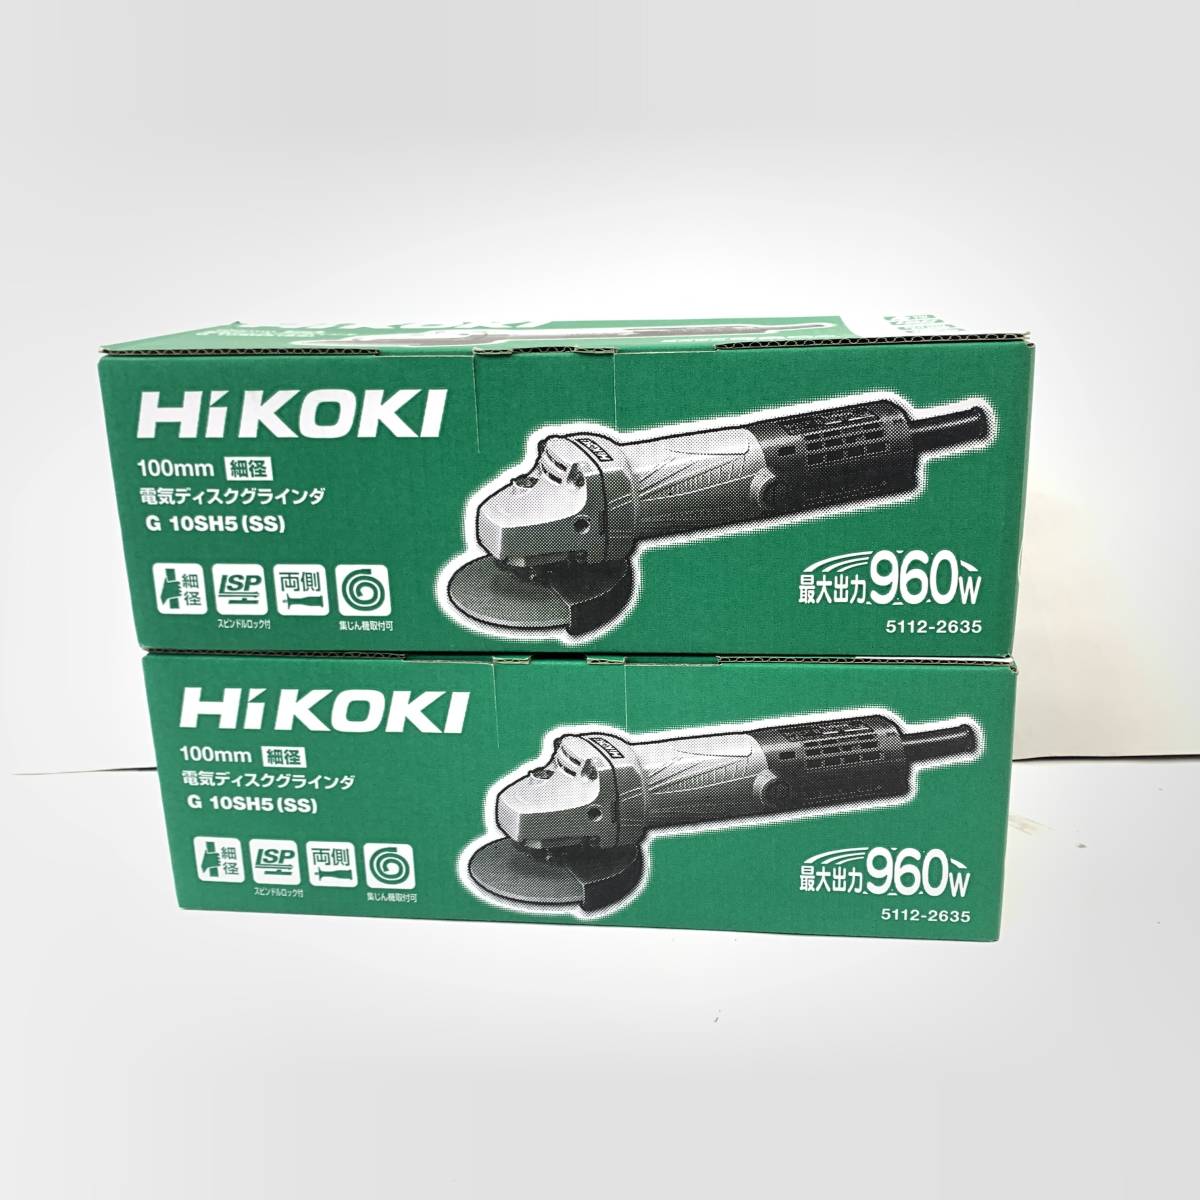 超可爱 ■【未使用品】Hikoki ハイコーキ G10SH5(SS) 100mm電気ディスクグラインダ 2個セット 2019年式 ディスクグラインダー